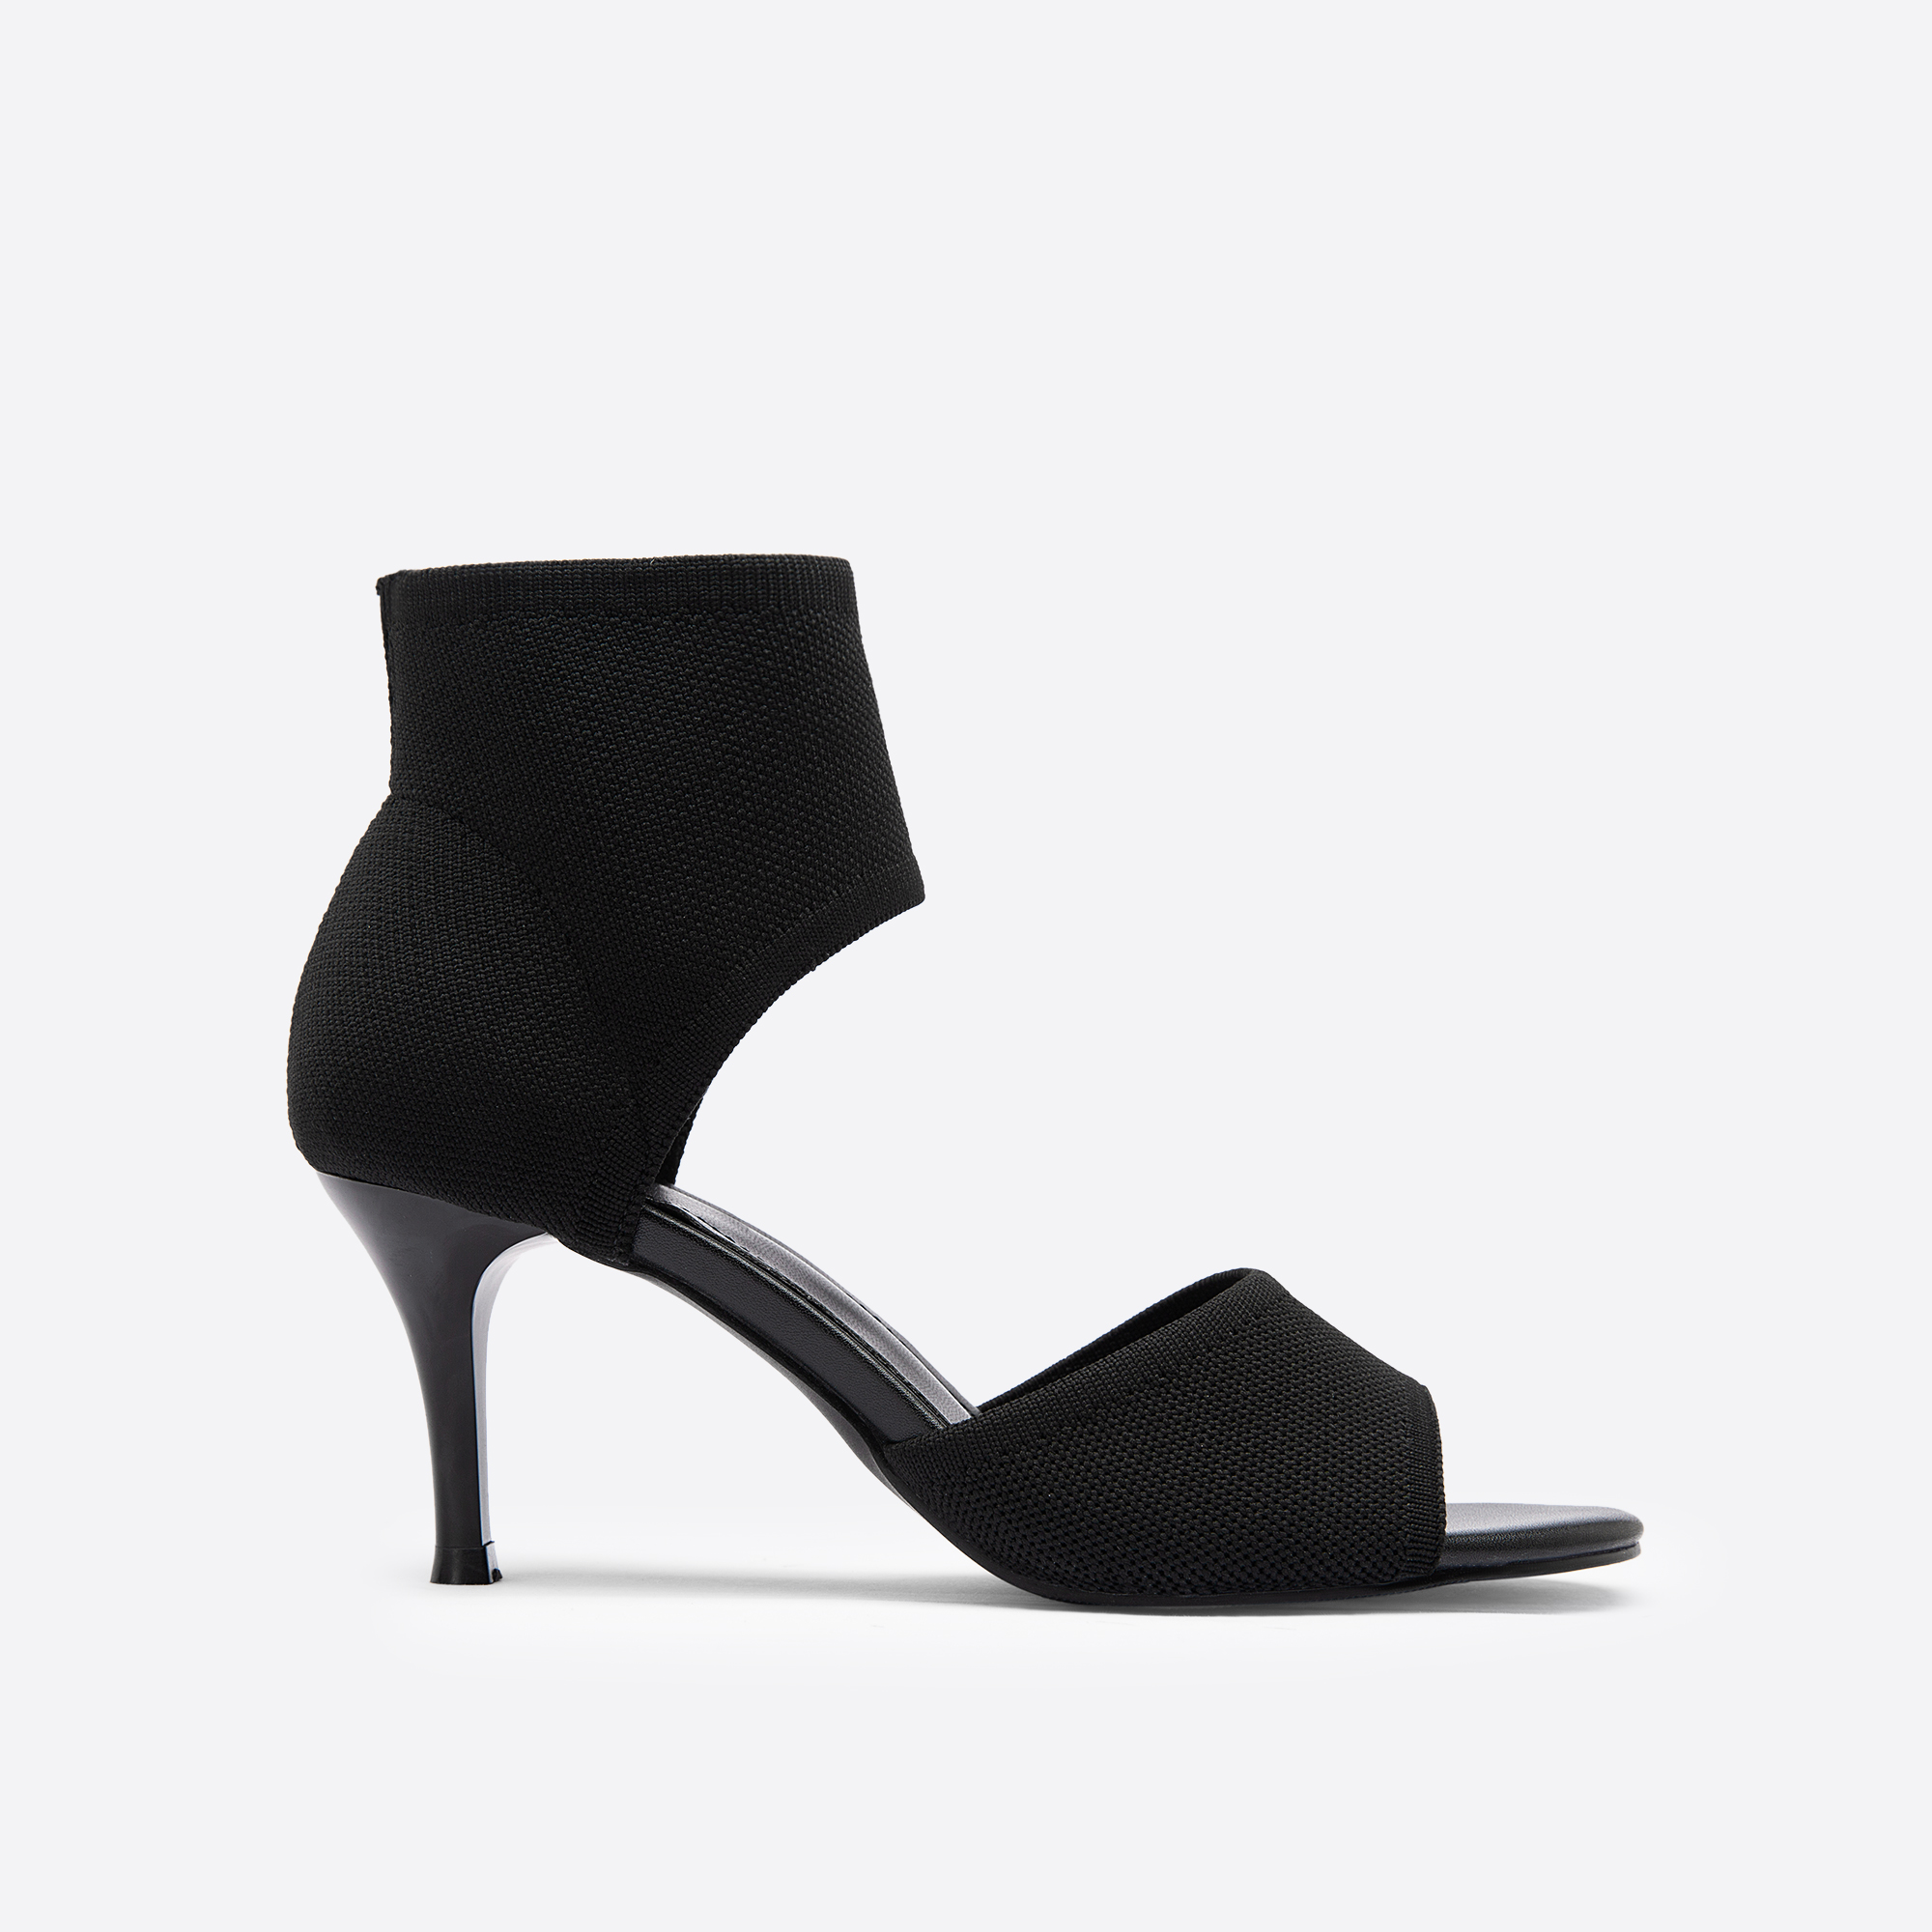 MOUSSE FIT Women Elegant Stiletto Daily Sandals